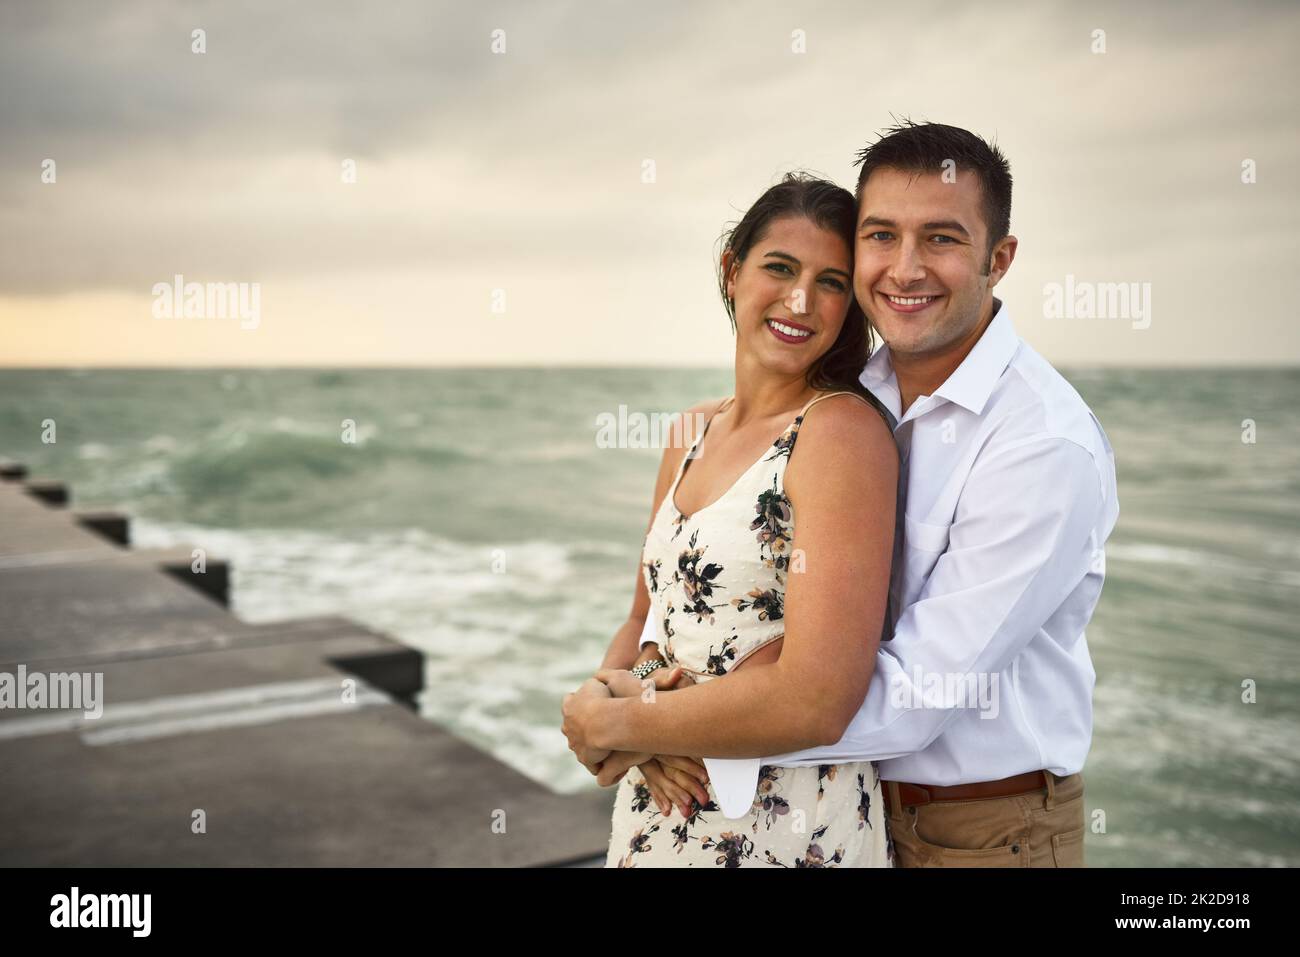 Shes meine eine und einzige. Beschnittenes Porträt eines liebevollen jungen Paares, das auf dem Steg am Strand steht. Stockfoto